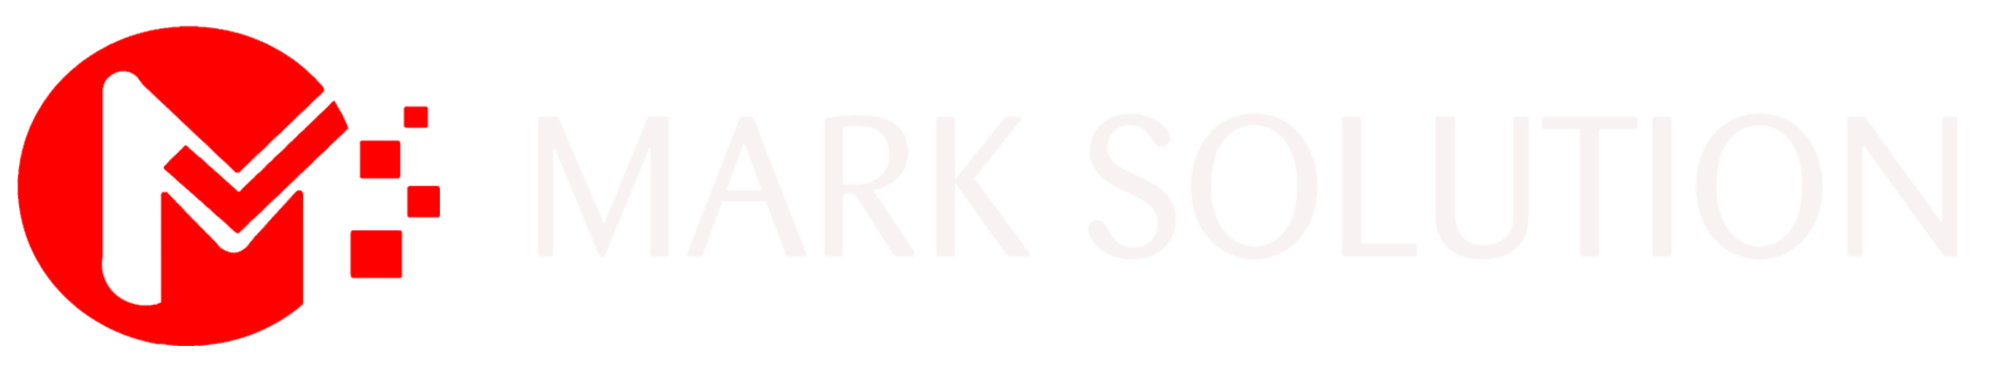 Mark solutions logo